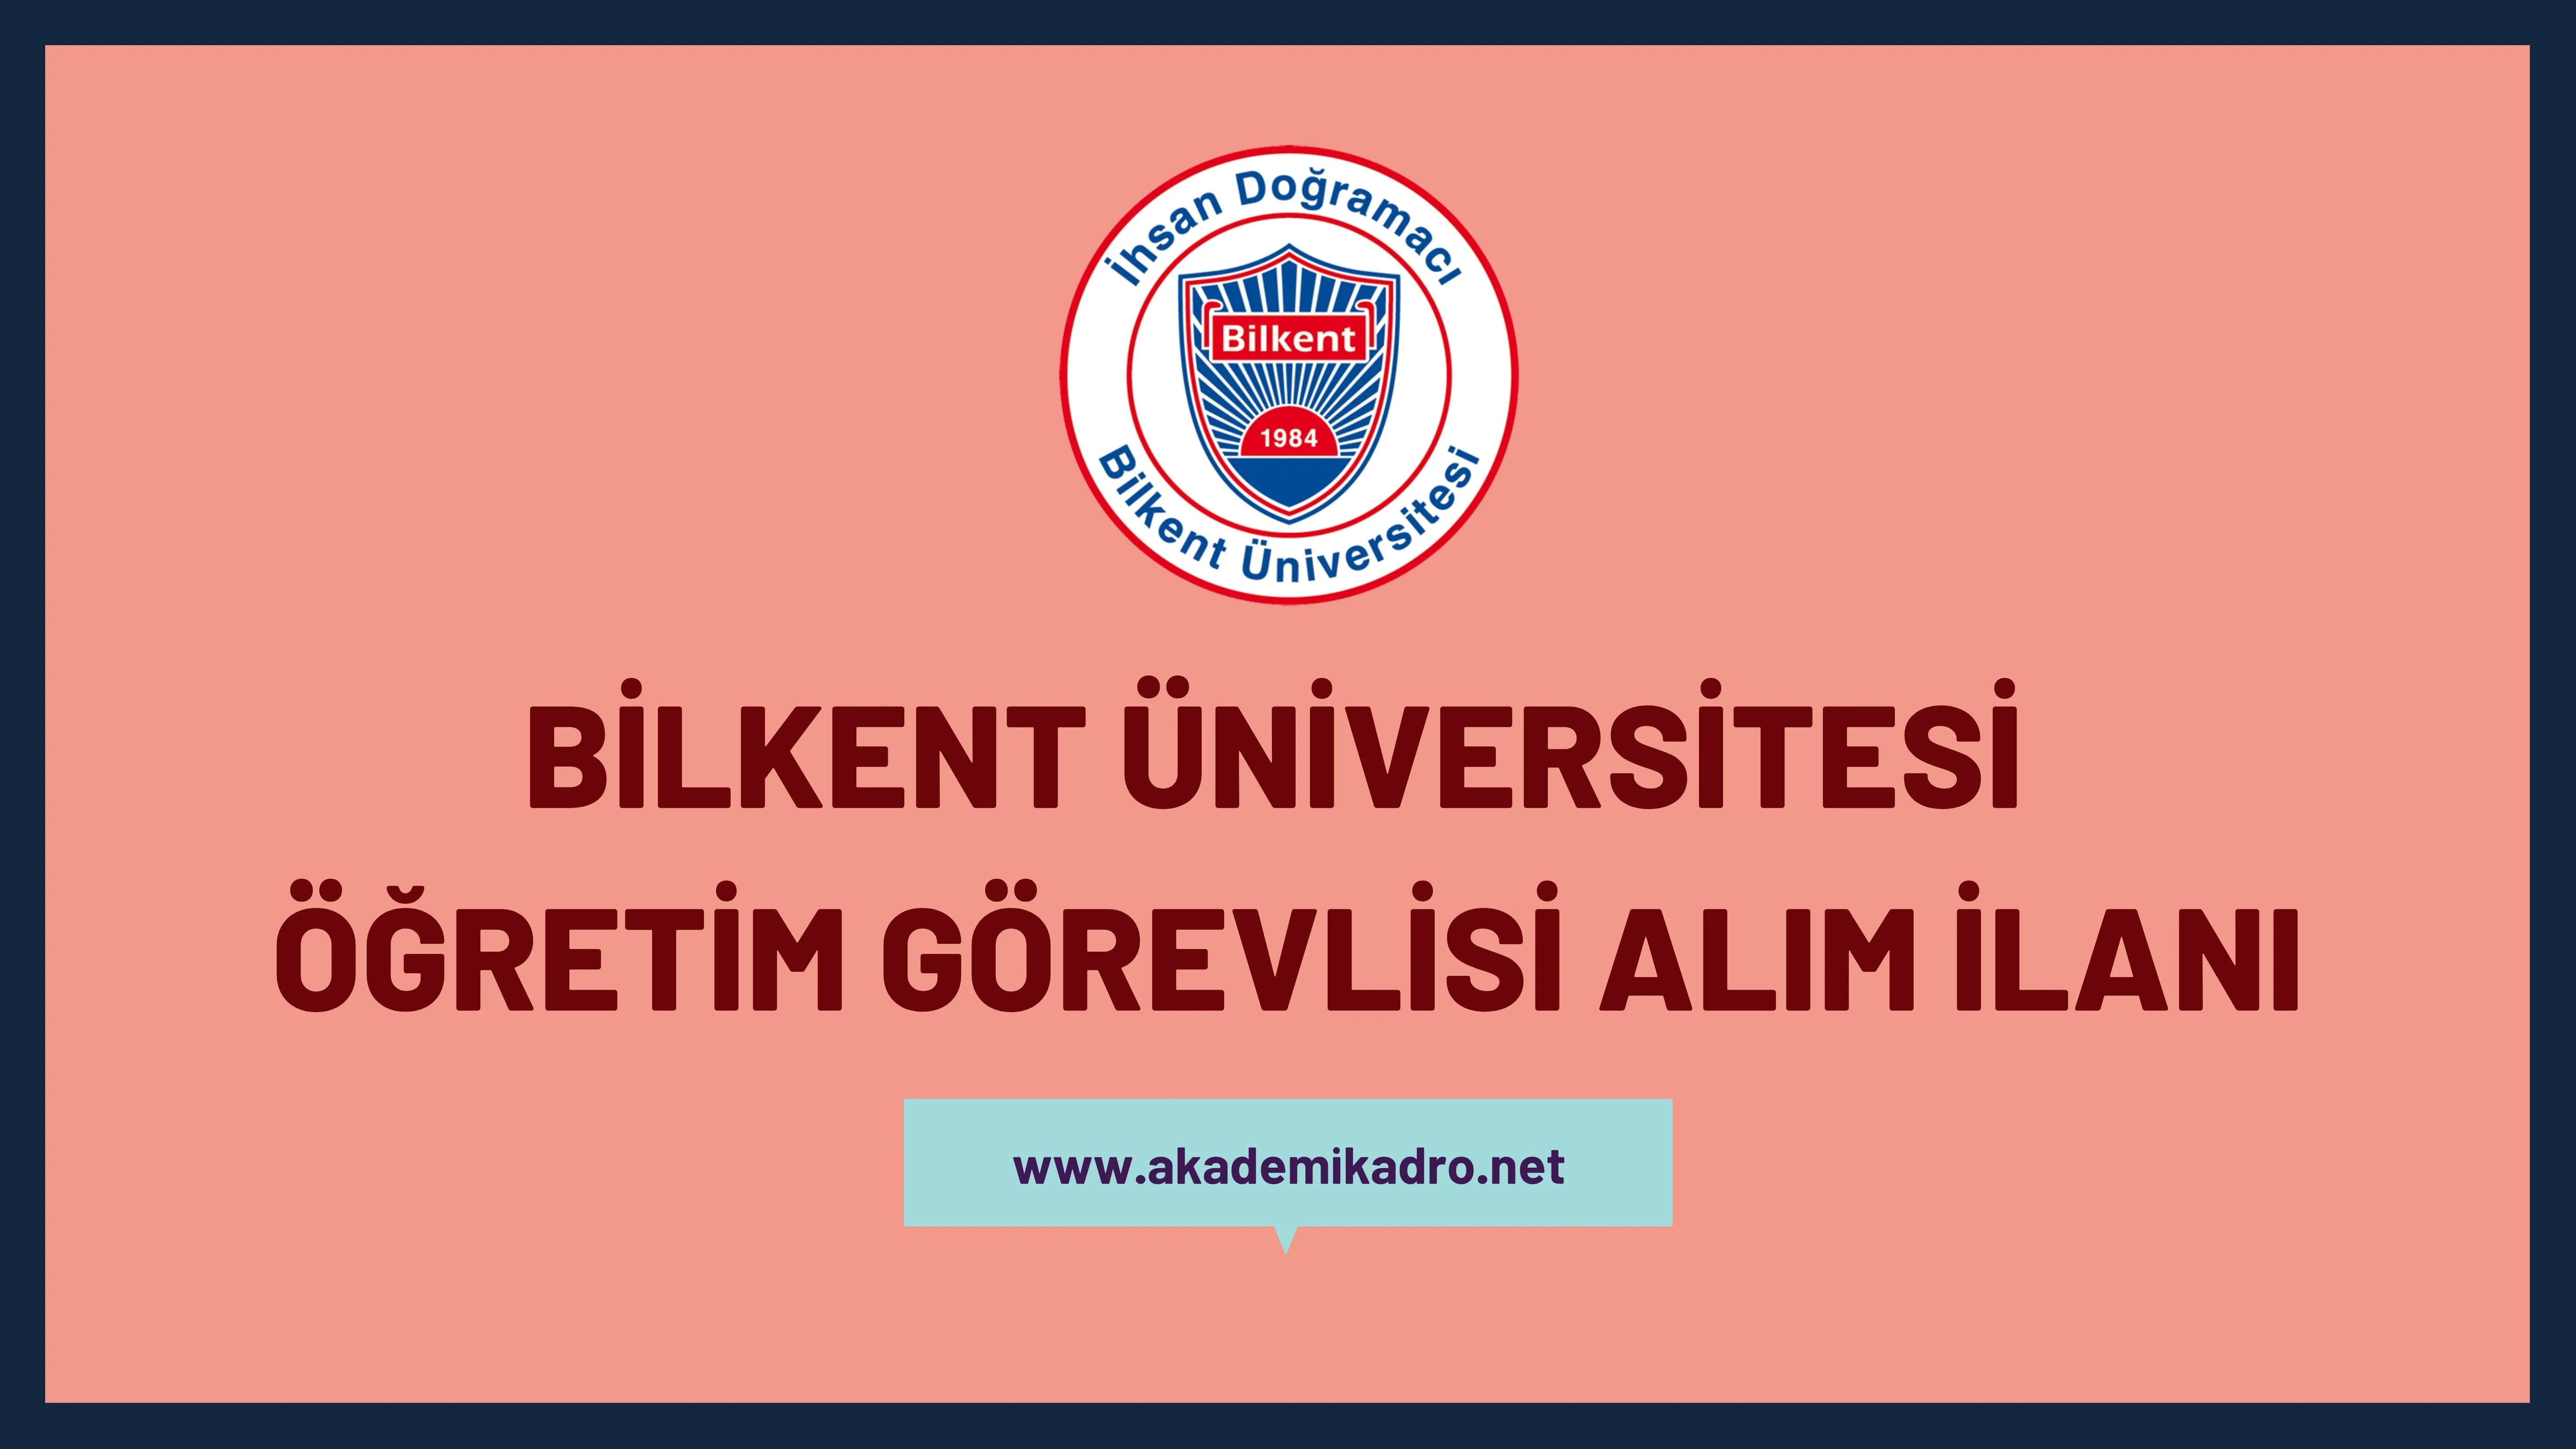 İhsan Doğramacı Bilkent Üniversitesi Öğretim Görevlisi Alacak